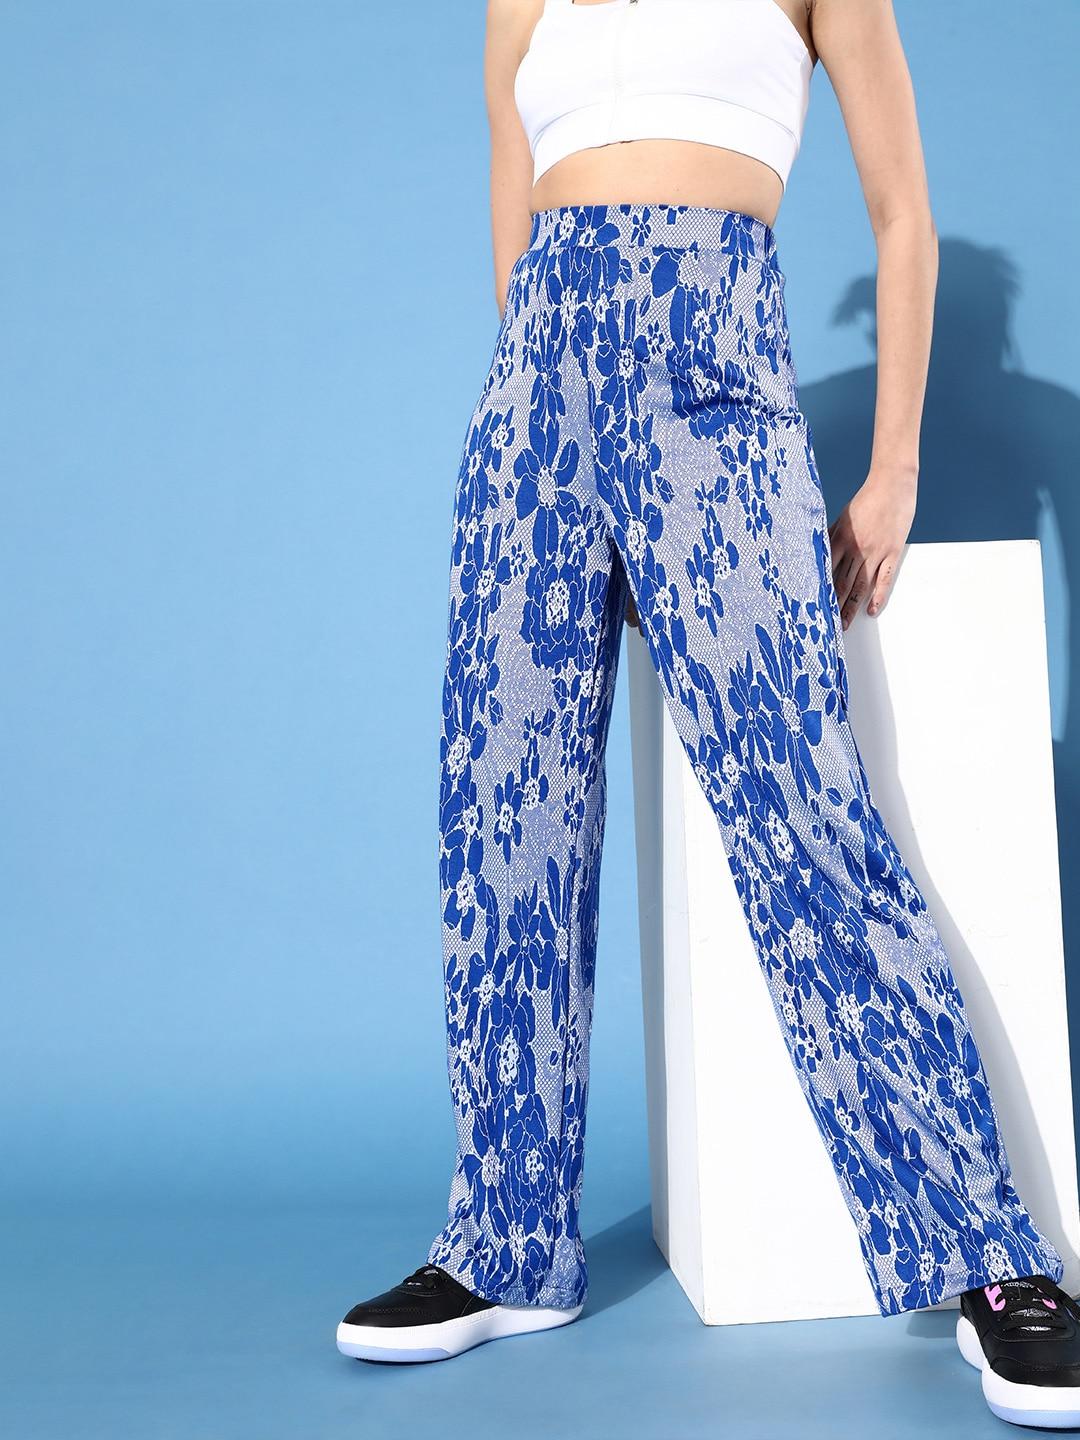 stylecast-x-hersheinbox-women-deep-blue-abstract-wide-leg-trousers